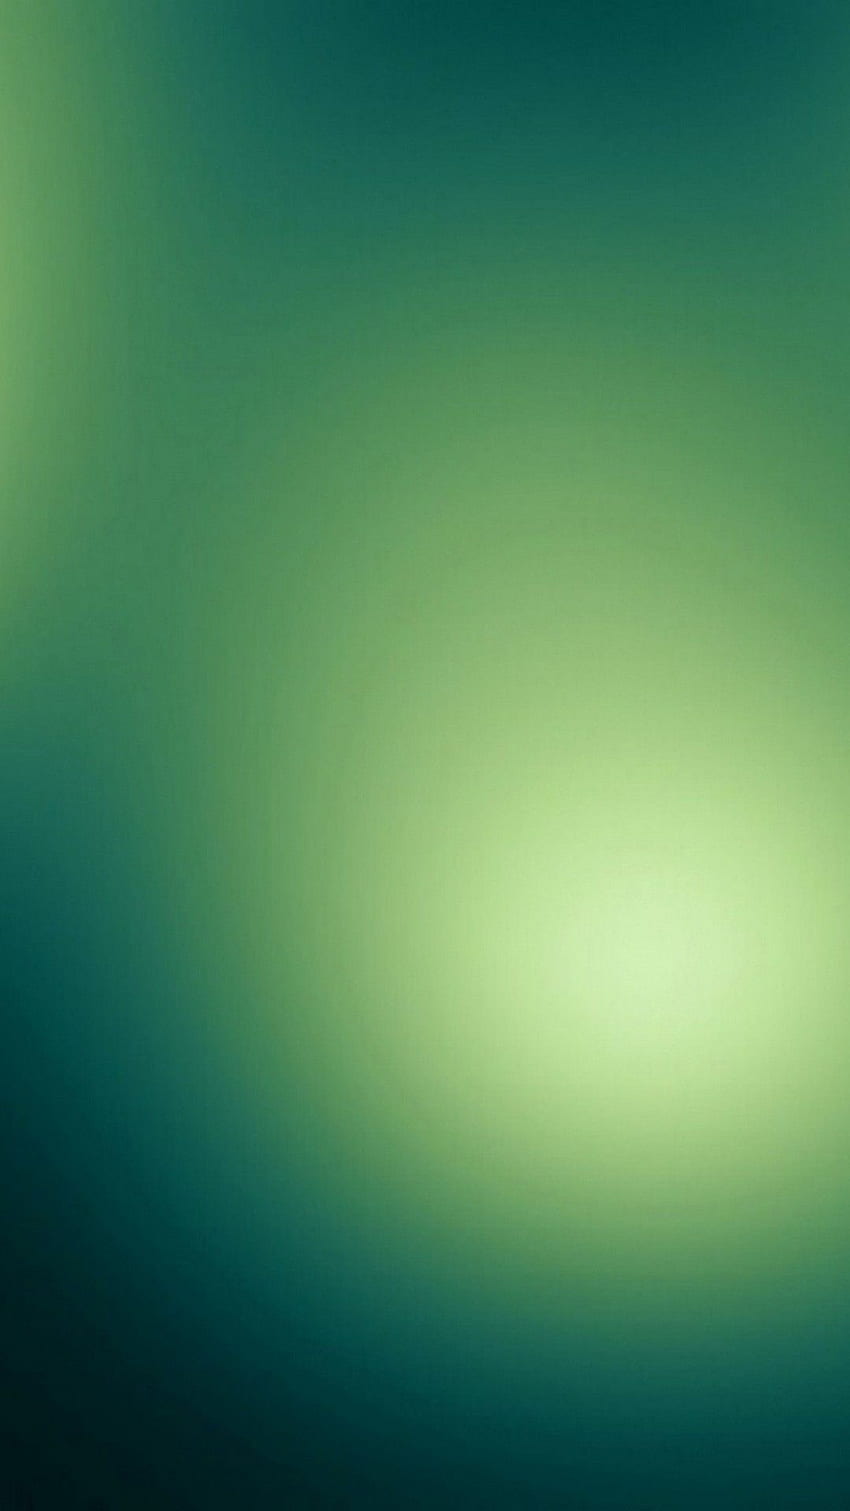 Android vert émeraude avec résolution - fond iPhone vert menthe, galaxie émeraude Fond d'écran de téléphone HD